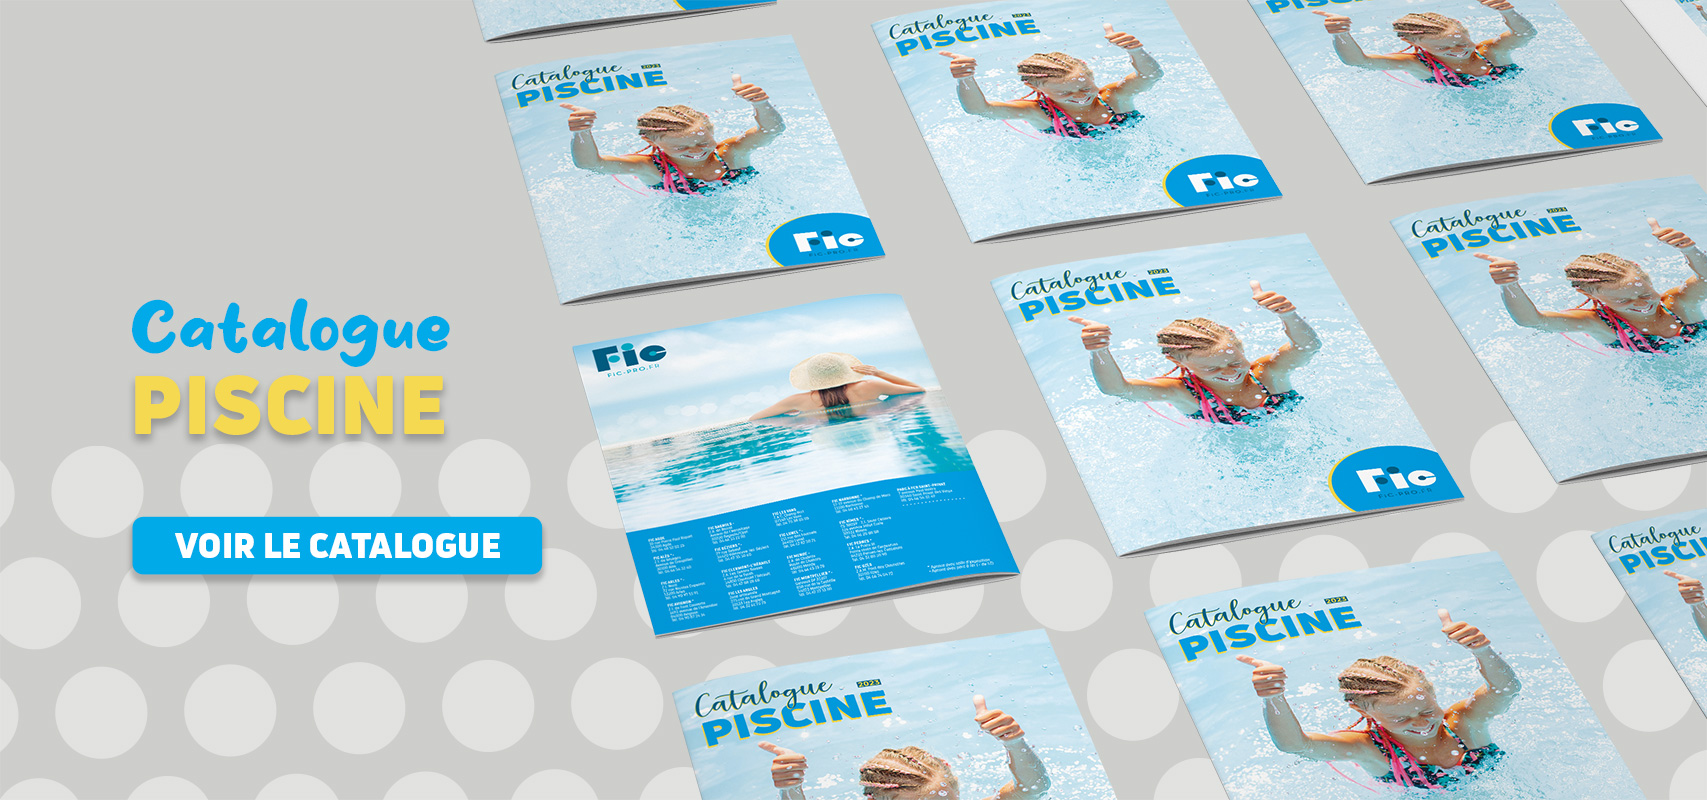 Notre catalogue piscine